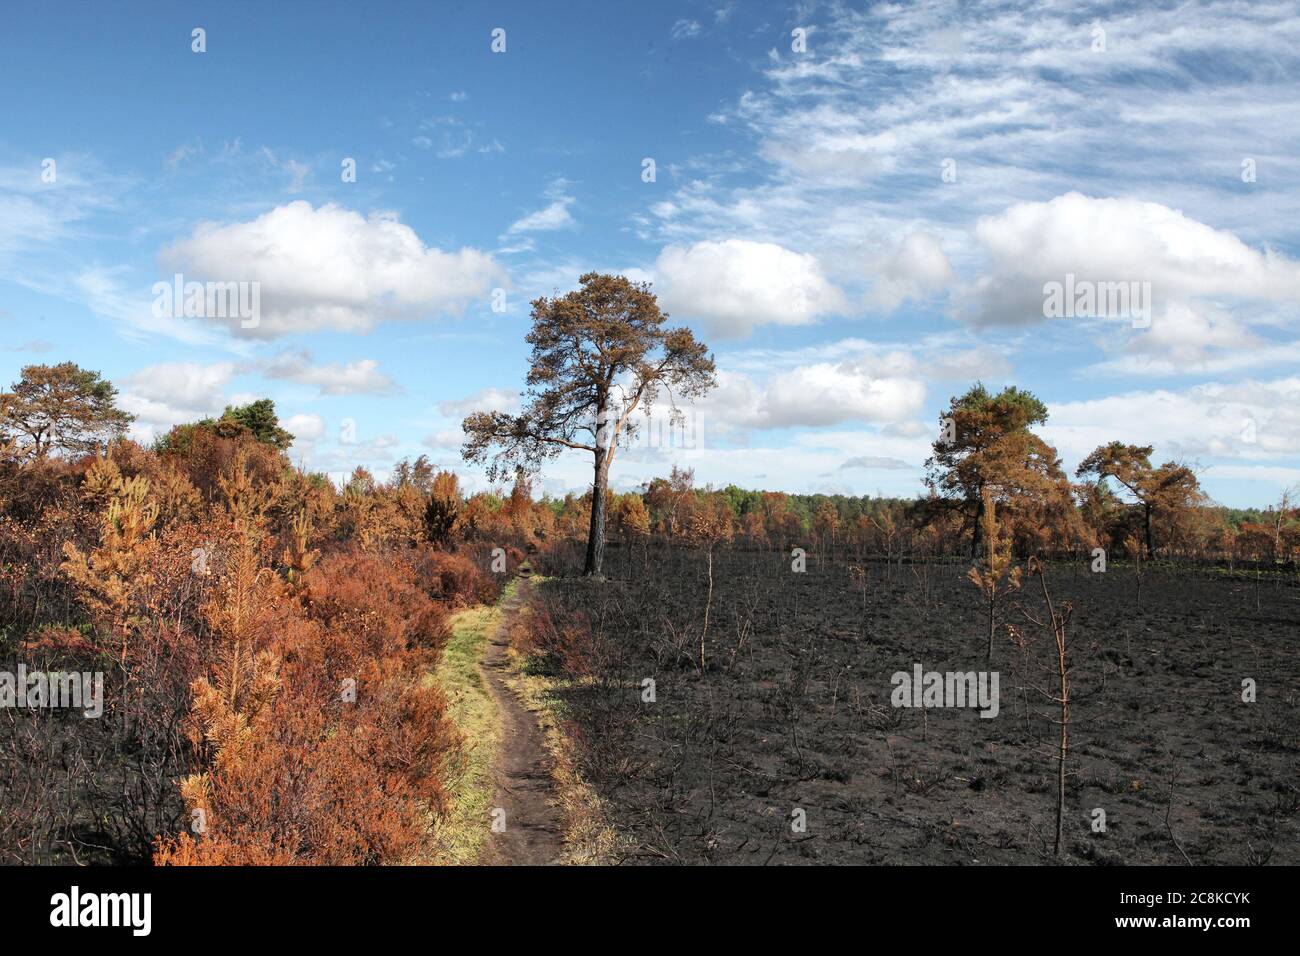 Le conseguenze del Thurley comune fuoco selvatico che ha bruciato 150 ettari di brughiera protetta nel giugno 2020, Surrey, Regno Unito. Foto Stock